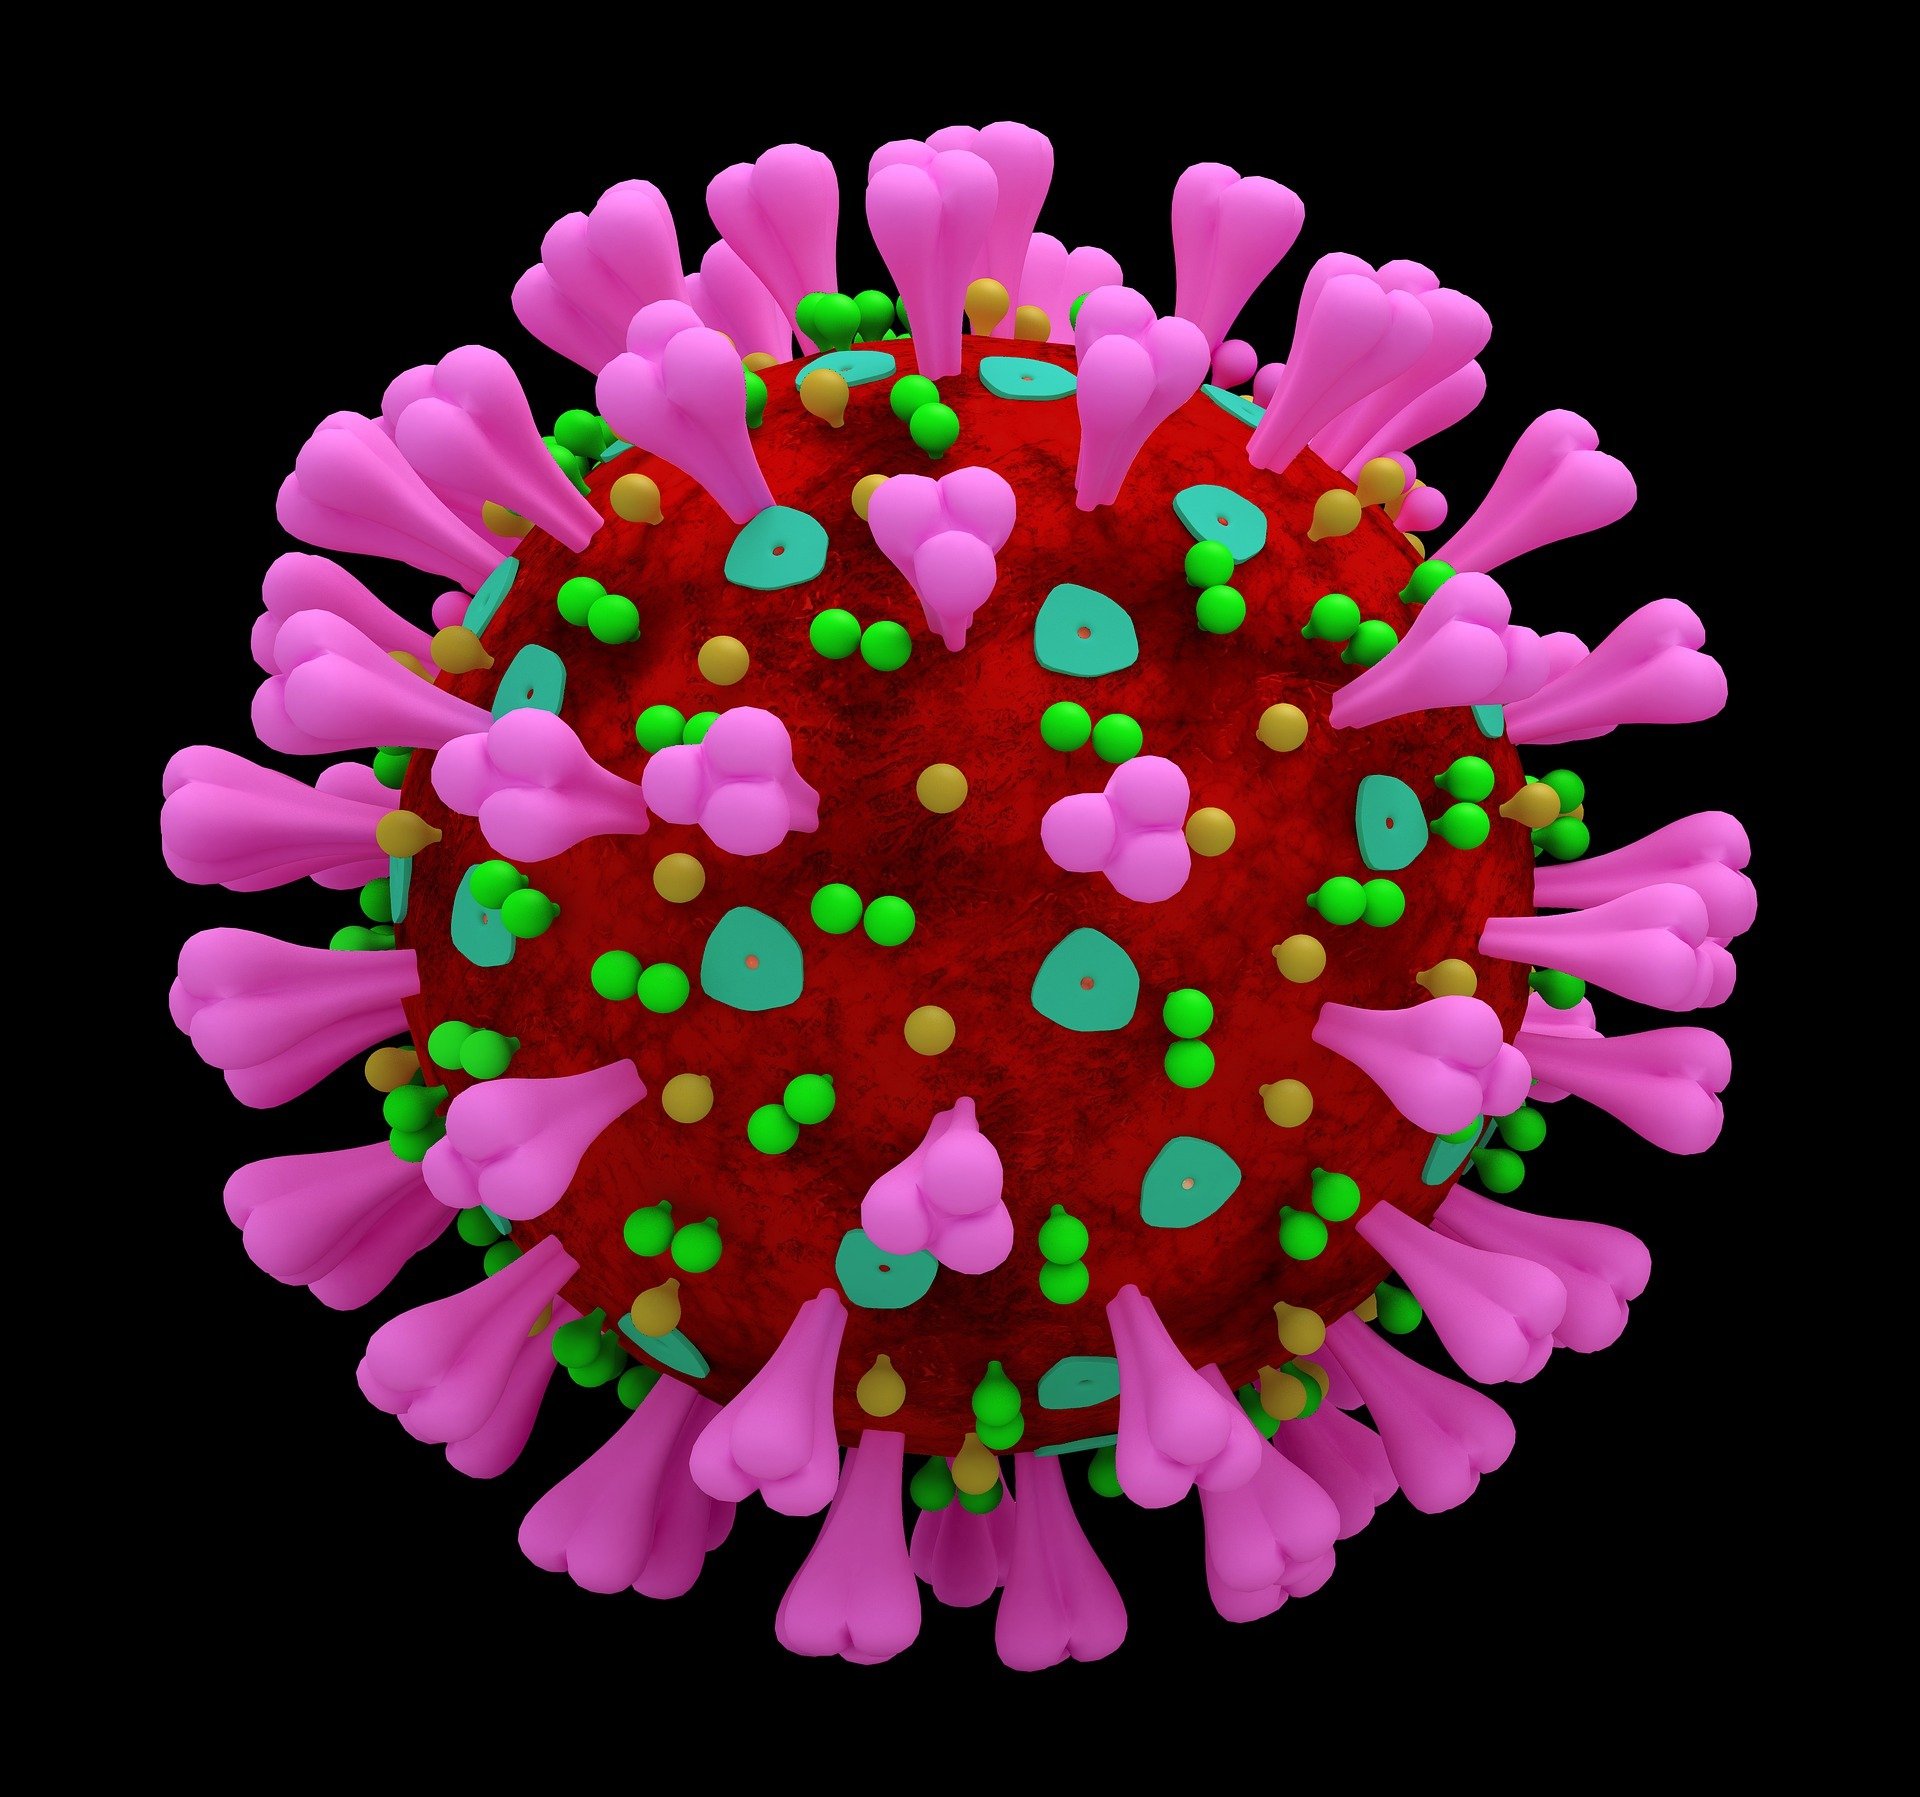 ماهي الذاكرة المناعية التي تحمي اجسامنا من فيروس كورونا COVID-19. للدكتور عروة محمد هاني الملي/المانيا